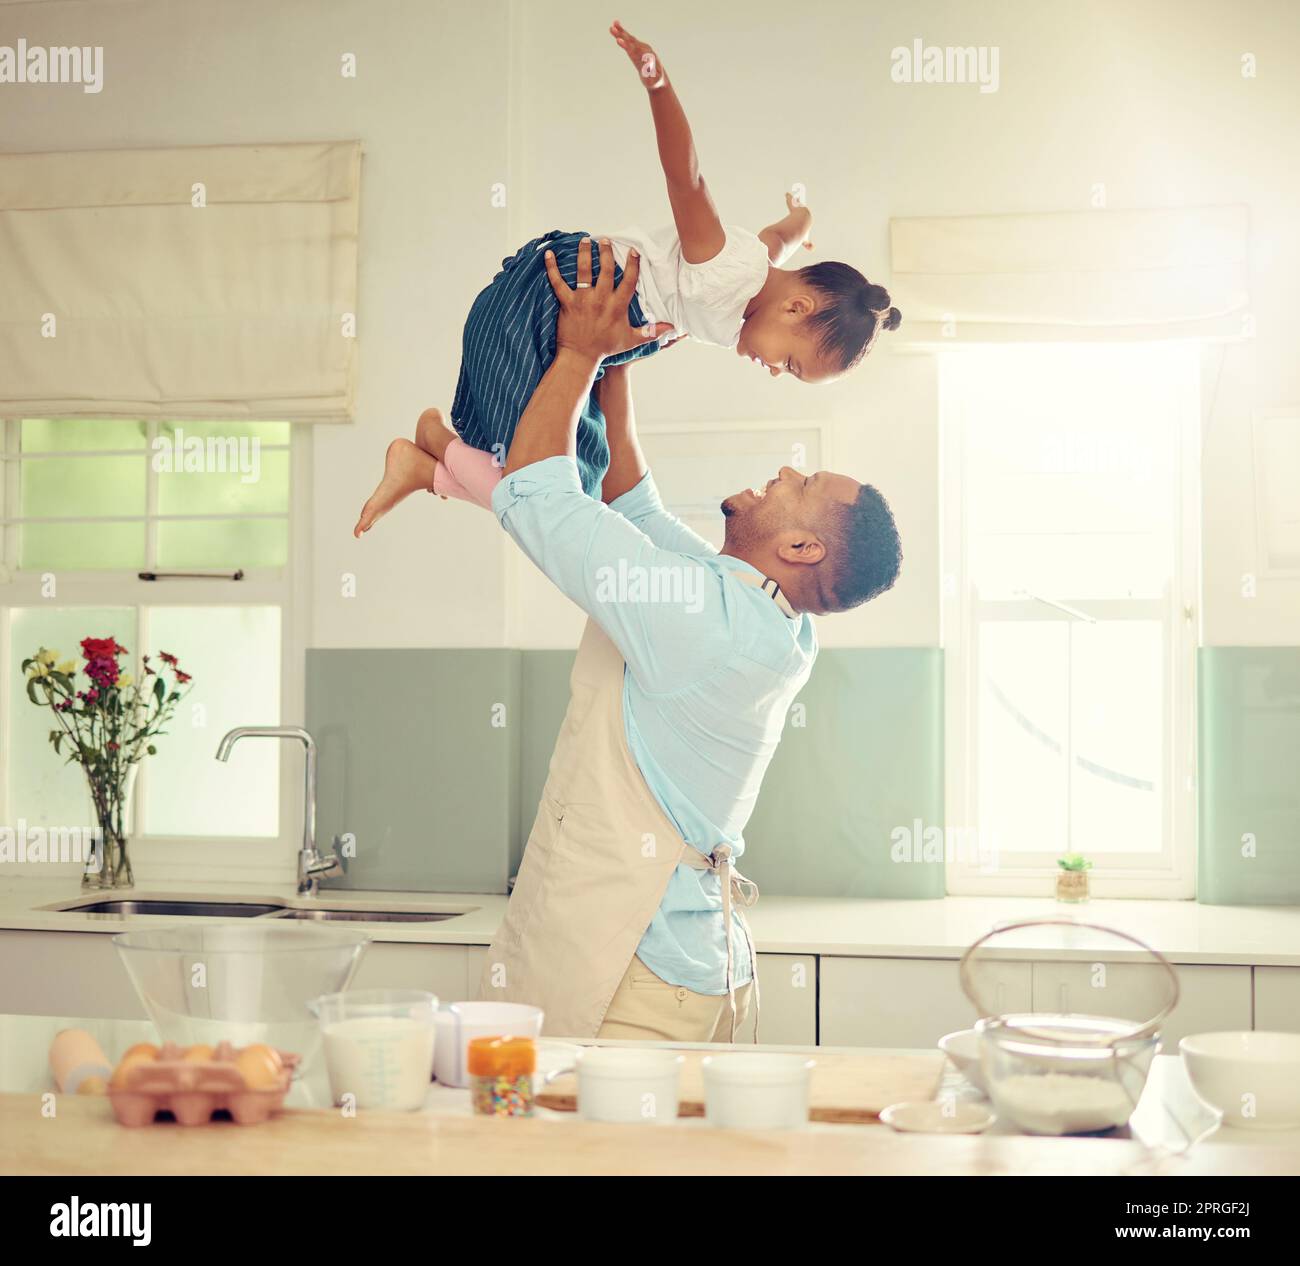 Glücklicher schwarzer Vater und Tochter, die in einer Küche spielen, während sie zusammen kochen, sich anfreunden und lachen. Afroamerikanische Eltern, die Zeit mit der Familie mit ihrem Kind genießen, verspielt sind und Spaß beim Backen haben Stockfoto